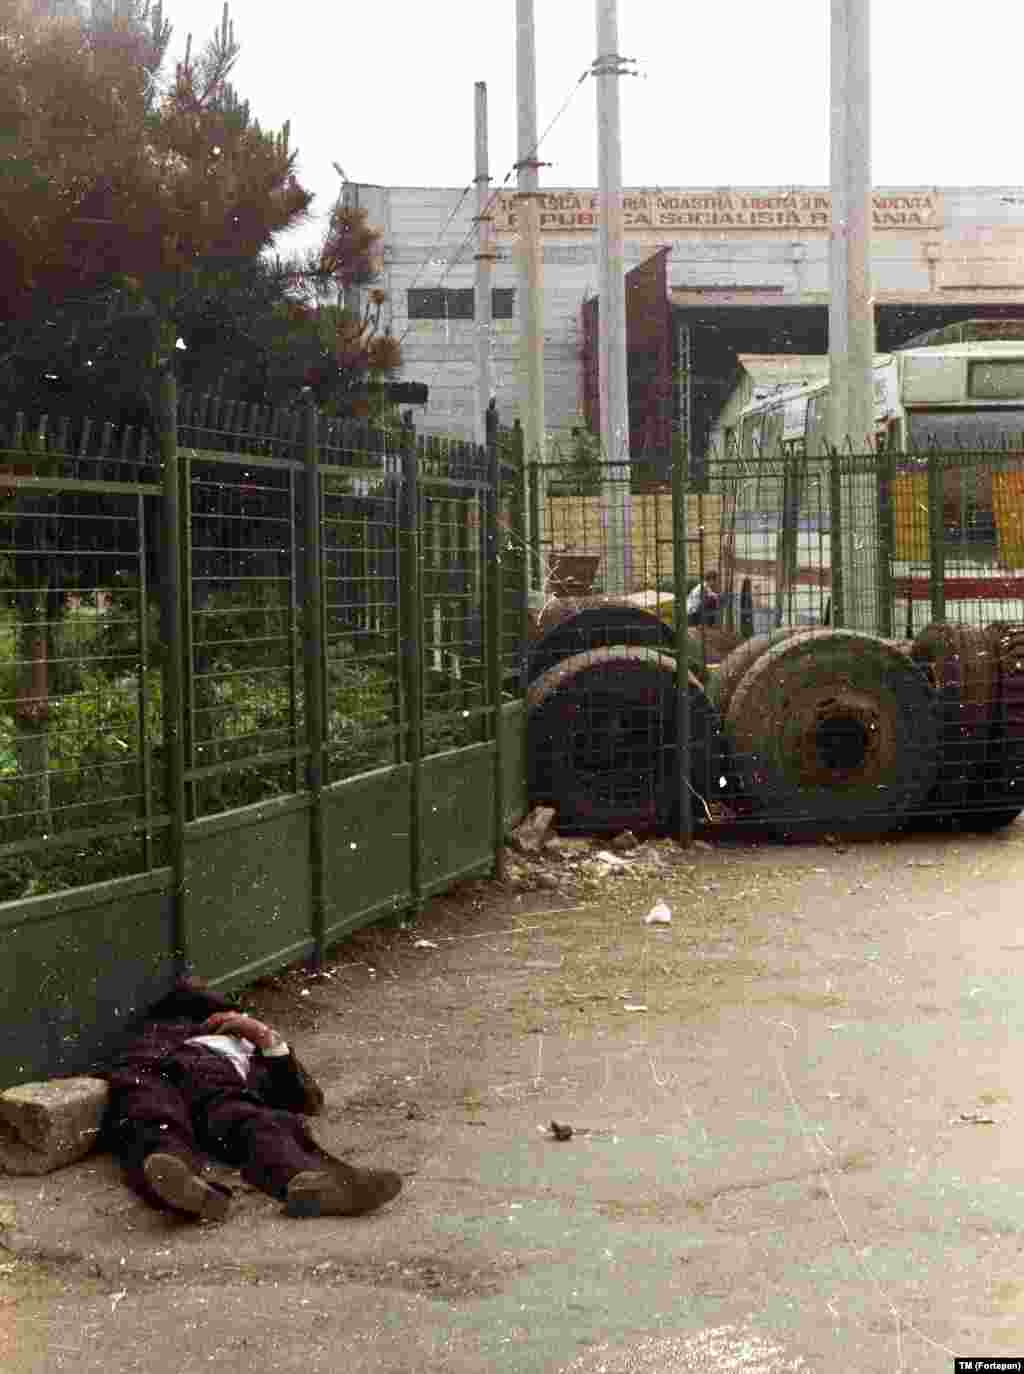 Спящий (вероятно, пьяный) человек у ворот фабрики, над которой виден лозунг &quot;Да здравствует наша свободная и независимая родина &ndash; Социалистическая Республика Румыния!&quot;.&nbsp; &nbsp;